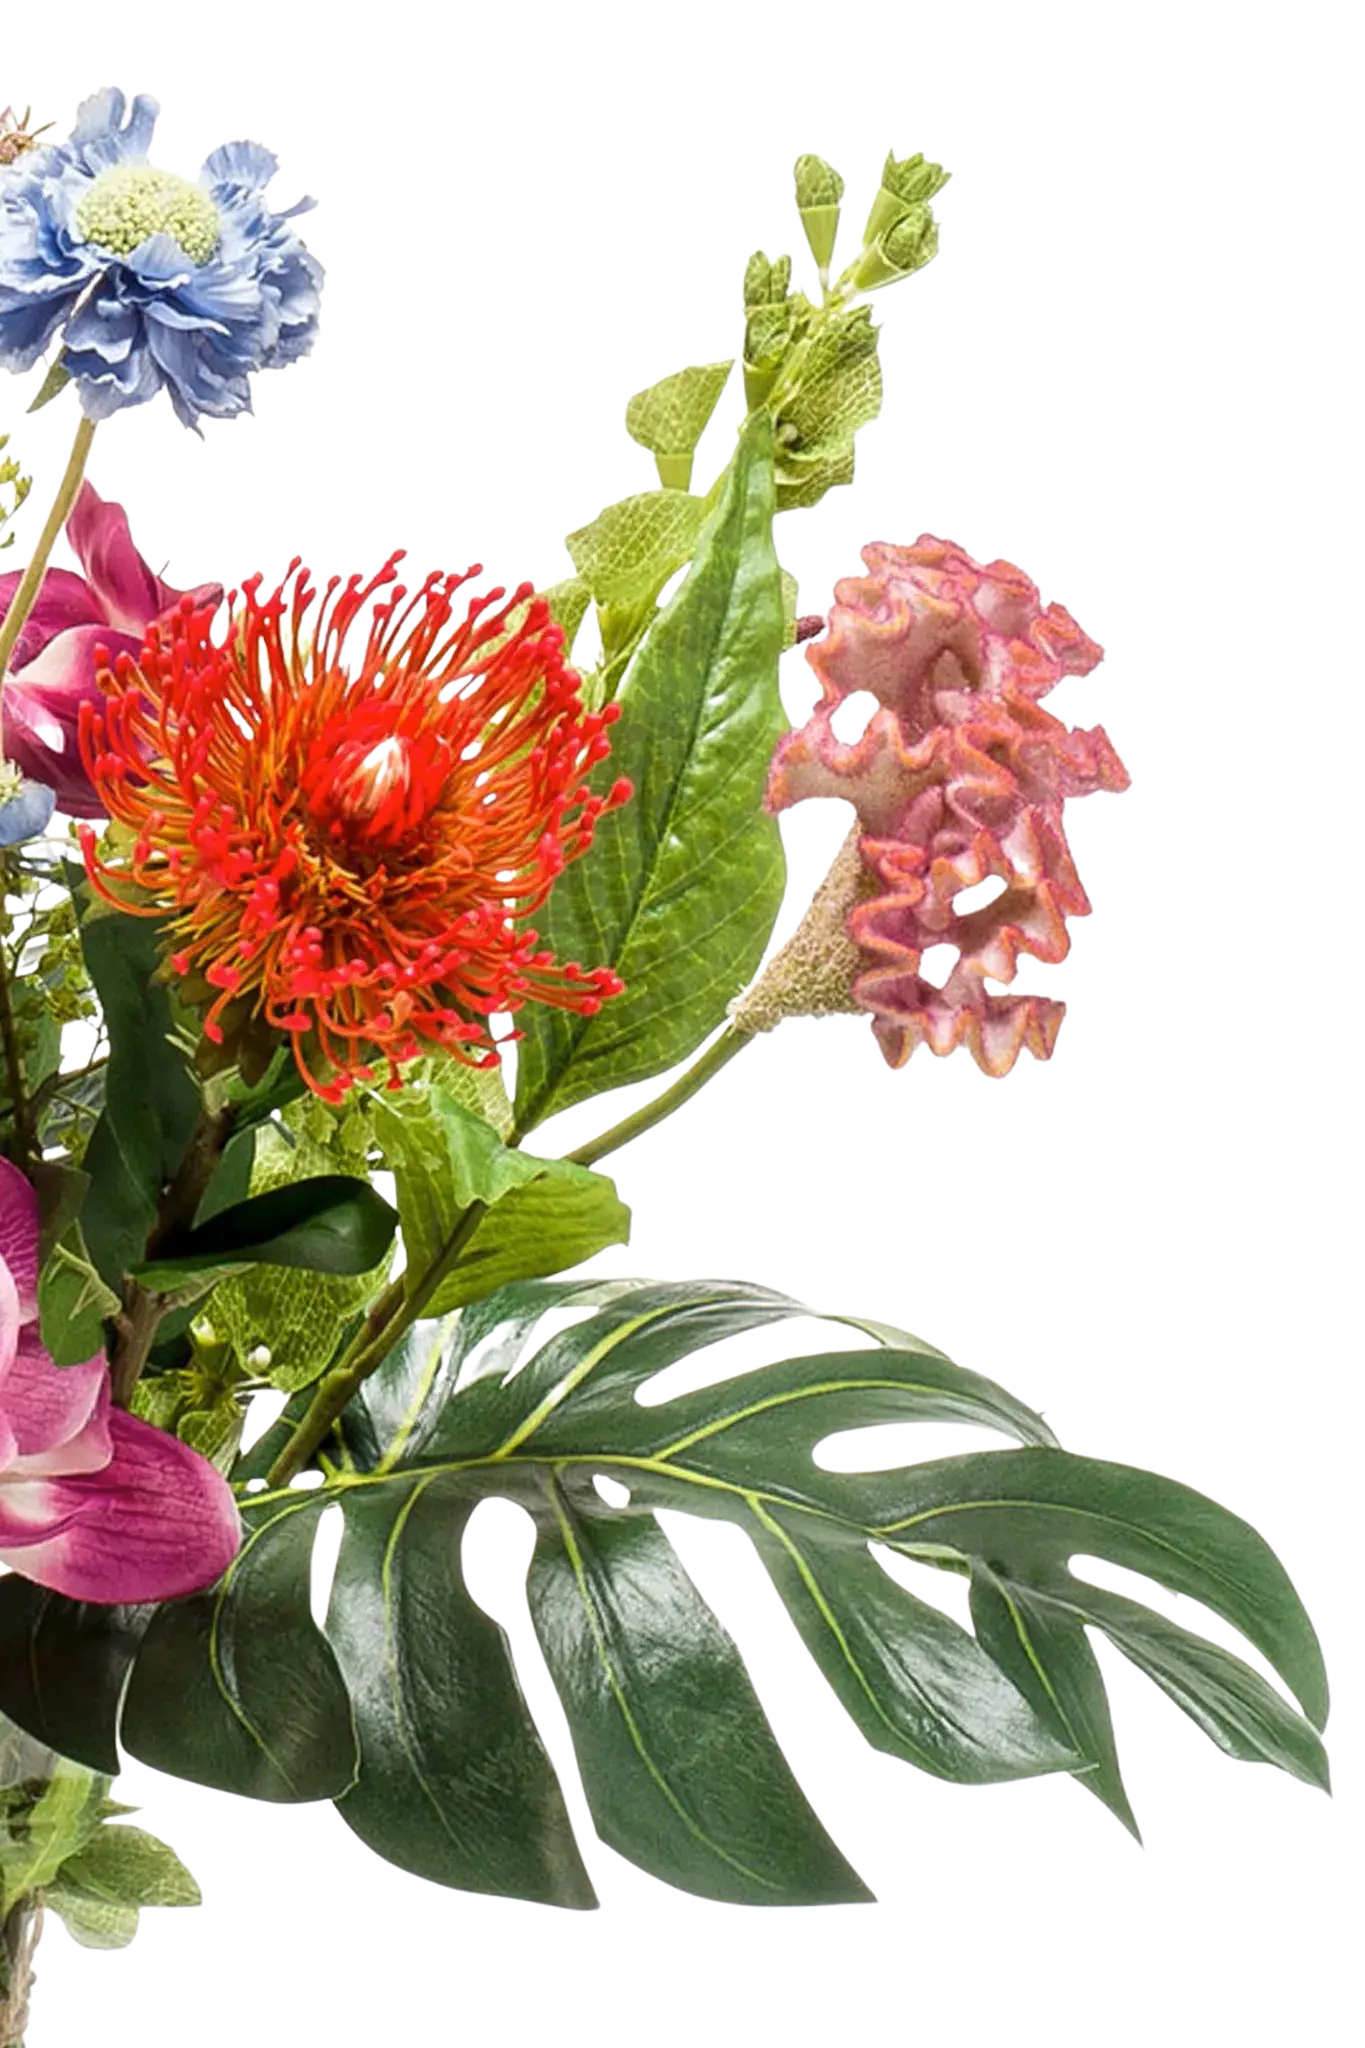 Künstlicher Blumenstrauß - Sahra auf transparentem Hintergrund, als Ausschnitt fotografiert, damit die Details der Kunstpflanze bzw. des Kunstbaums noch deutlicher zu erkennen sind.